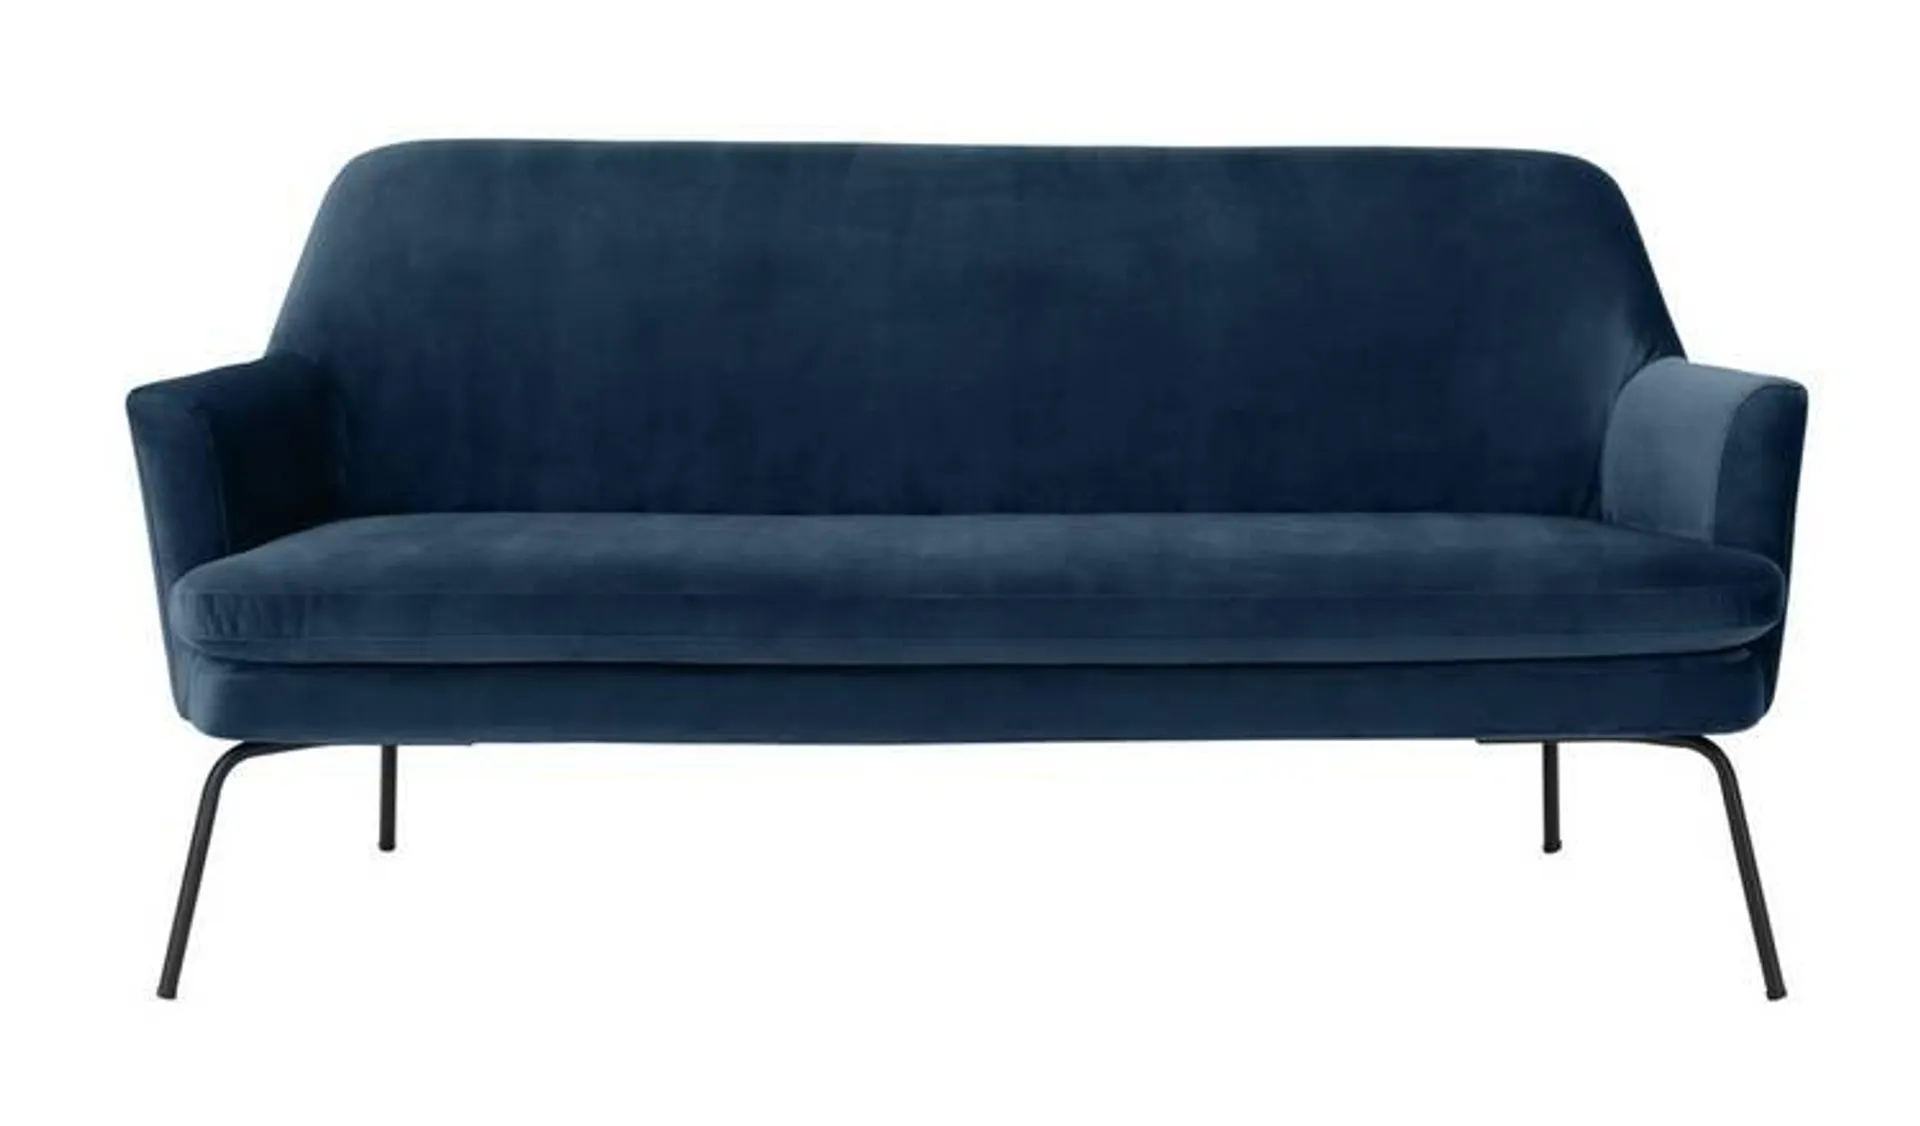 Habitat Celine Velvet 2 Seater Sofa - Navy Blue